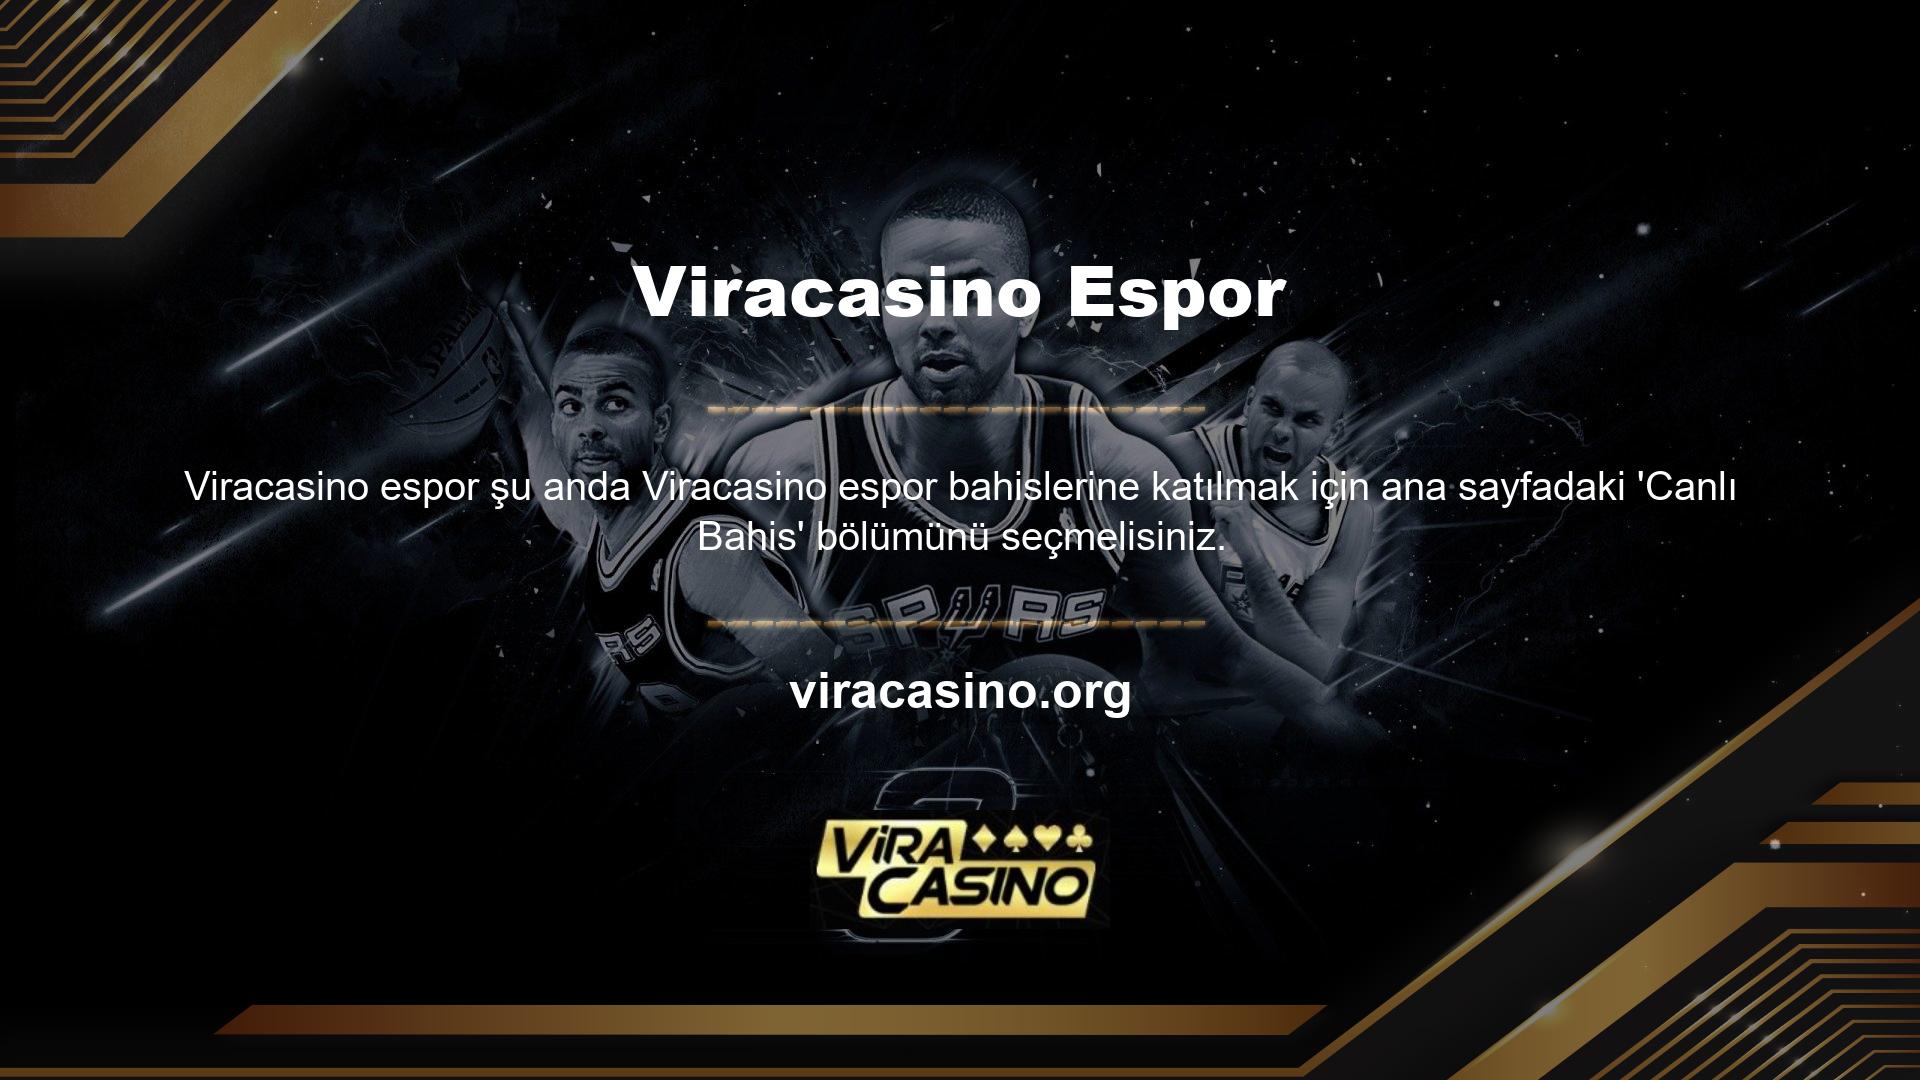 Viracasino web sitesinin bu bölümünü aktif olarak ziyaret ederek tüm maçları canlı olarak takip edebilirsiniz